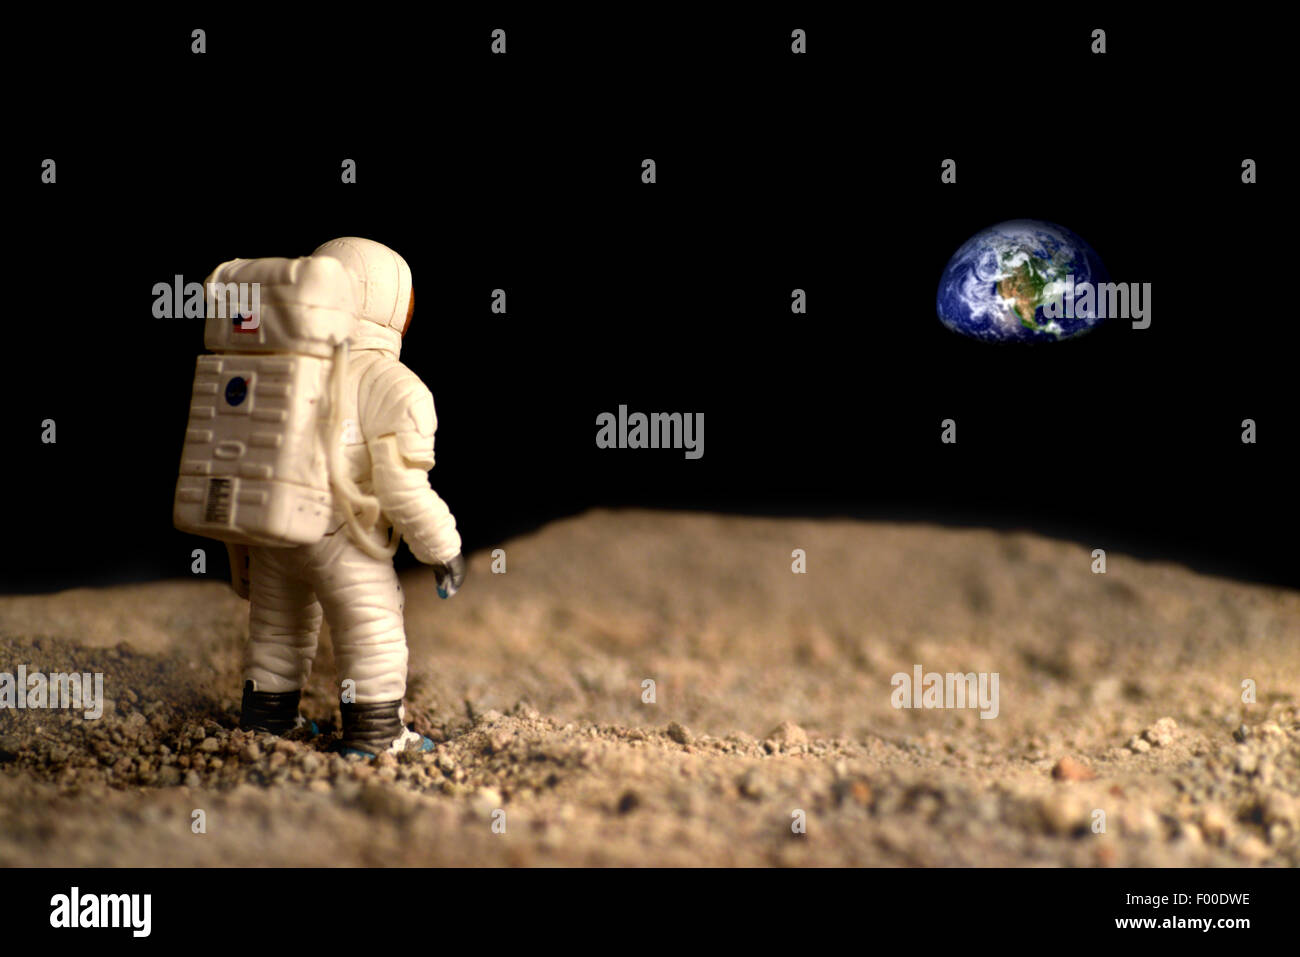 Amerikanische Astronauten auf dem Mond, die Erde zu betrachten, auf dem Hintergrund Elemente dieses Bild von der NASA eingerichtet. Stockfoto